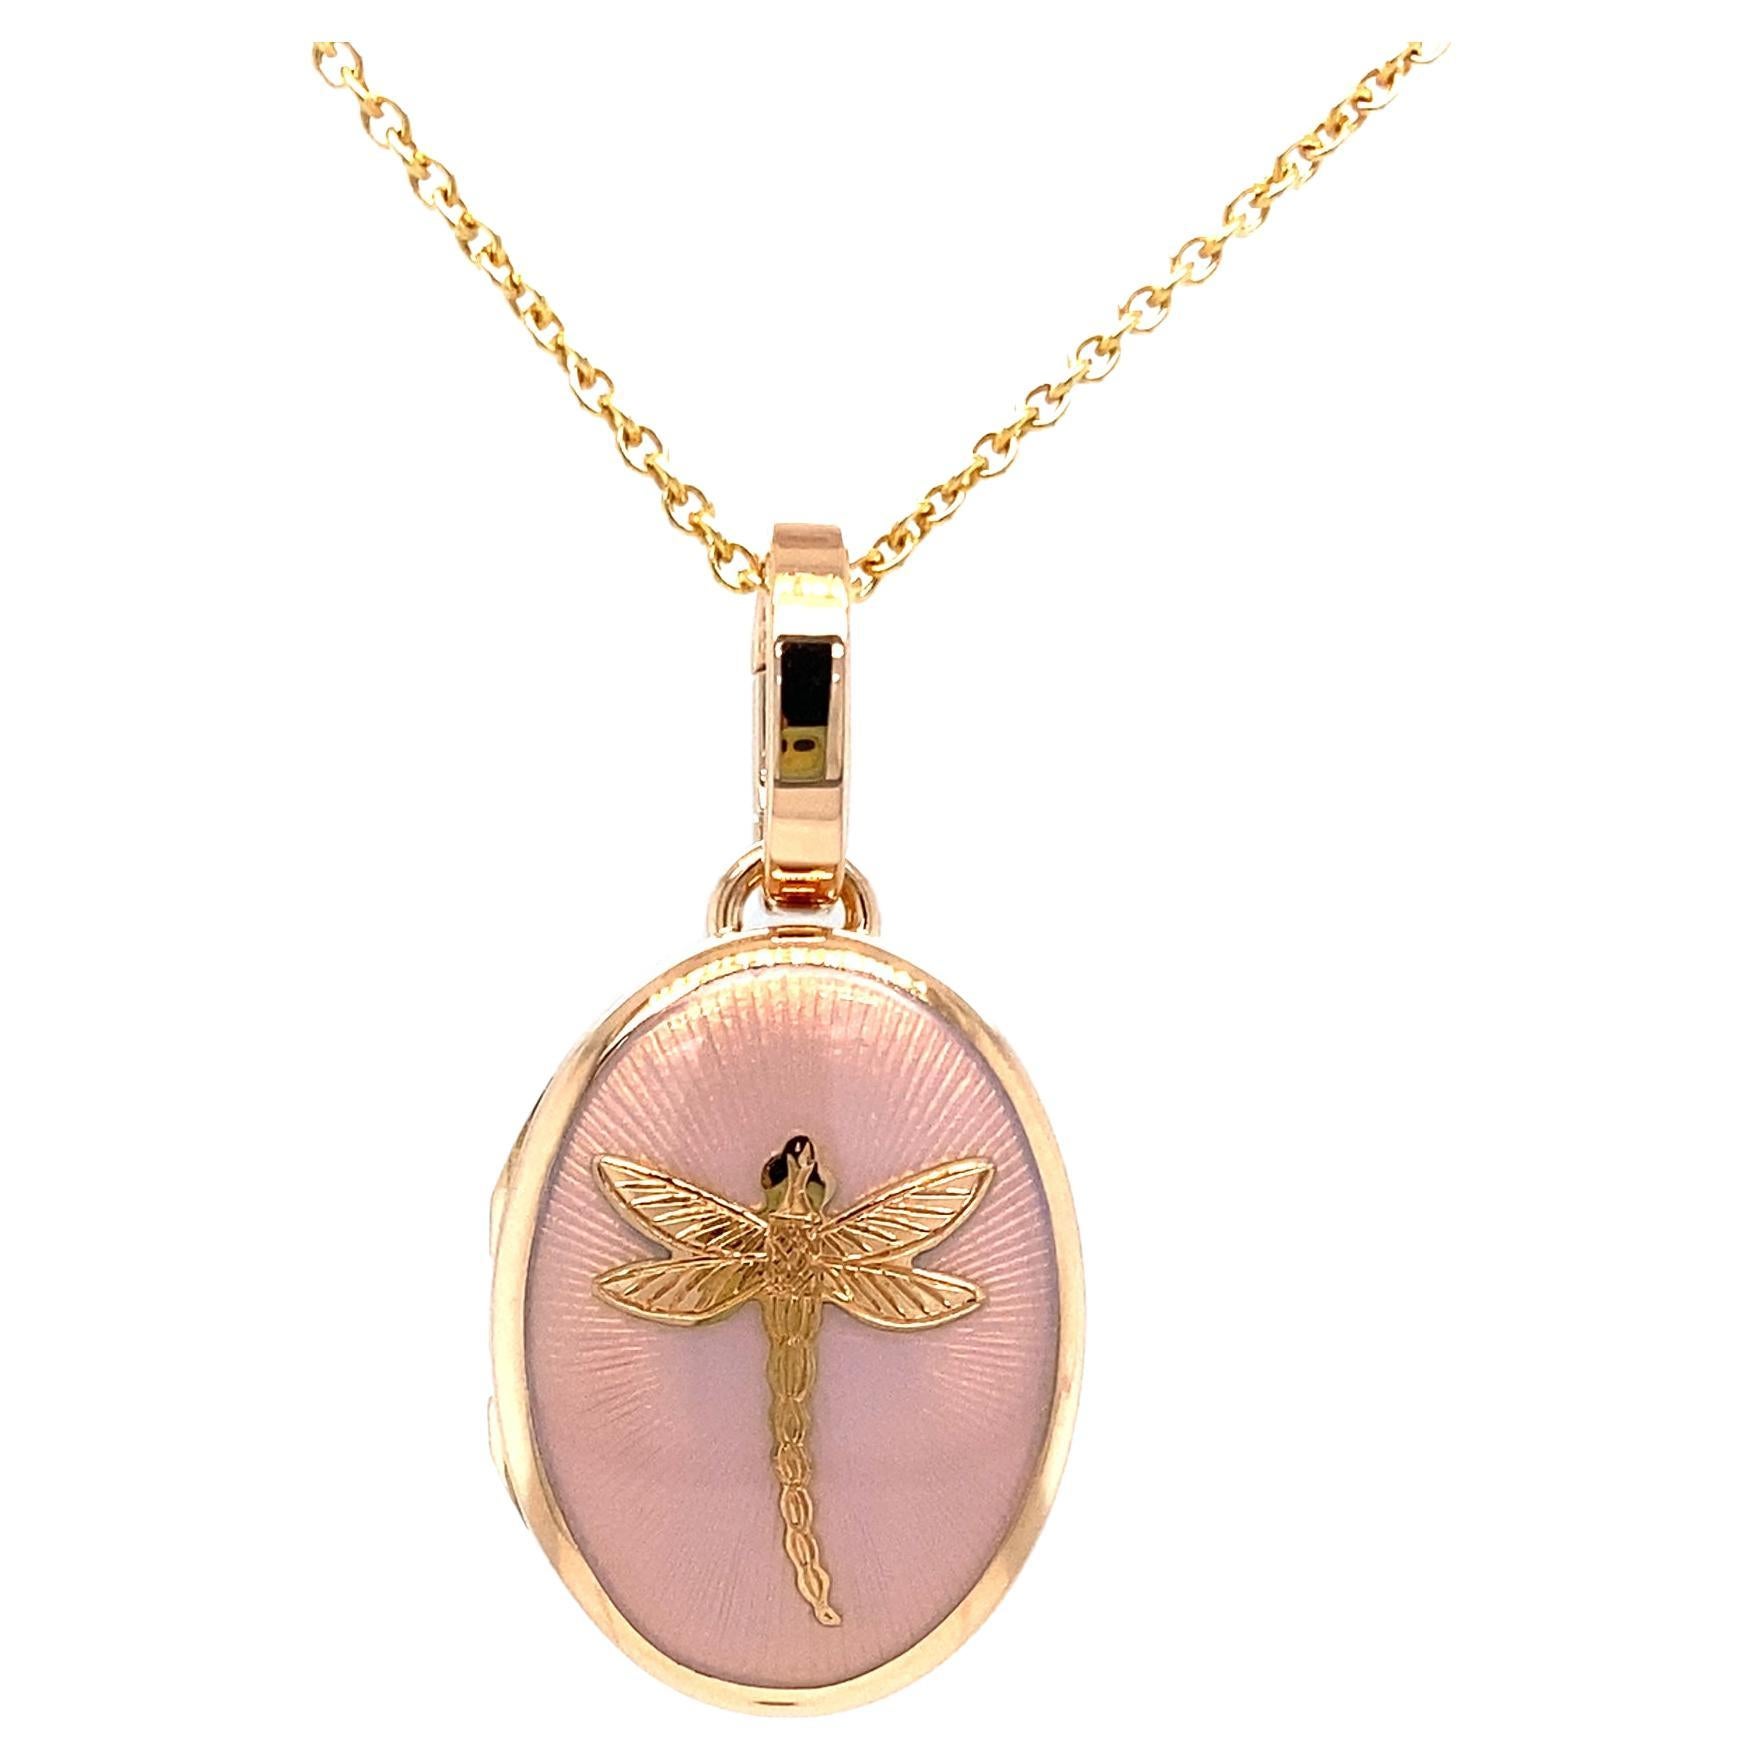 Oval Locket Pendant Necklace Dragonfly - 18k Rose Gold - Opalescent Pink Enamel